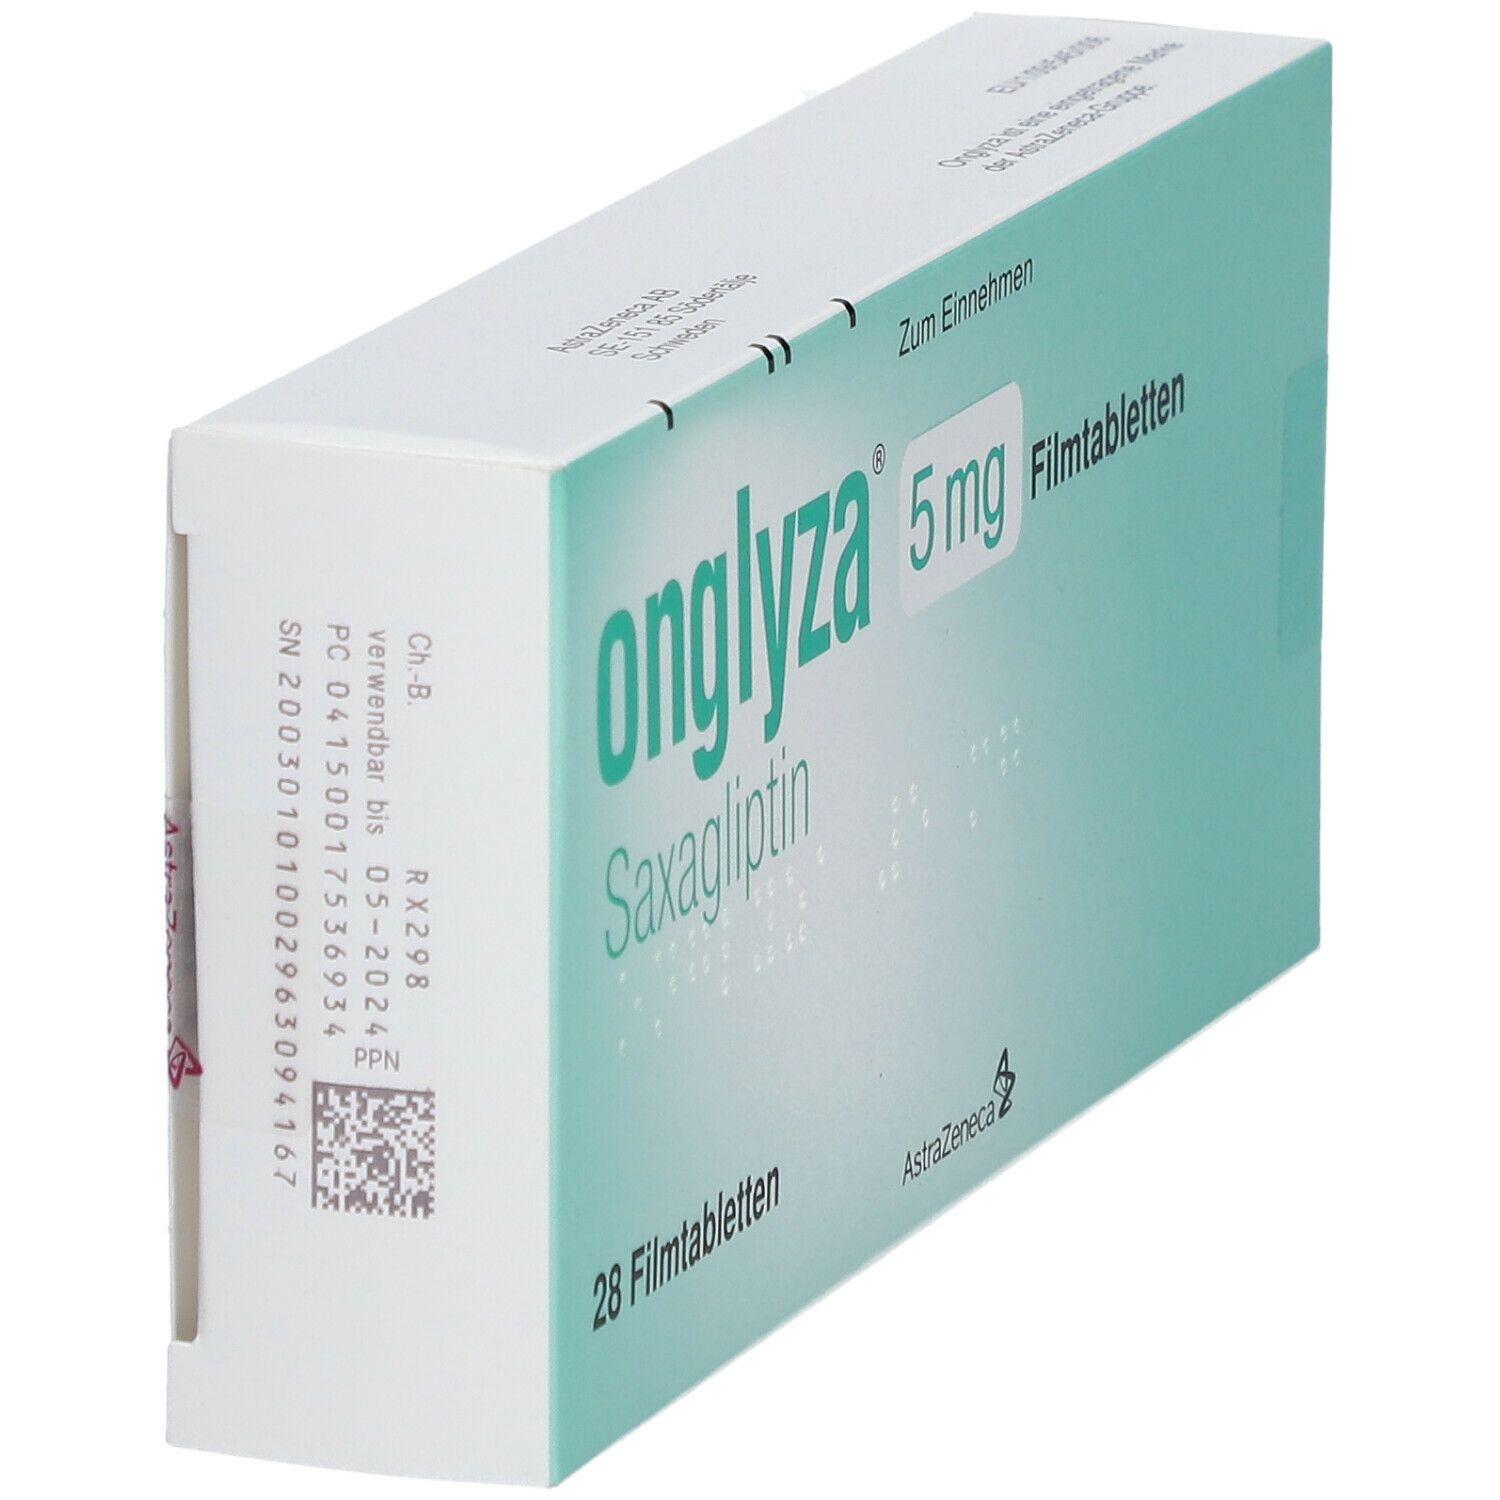 Onglyza® 5  mg